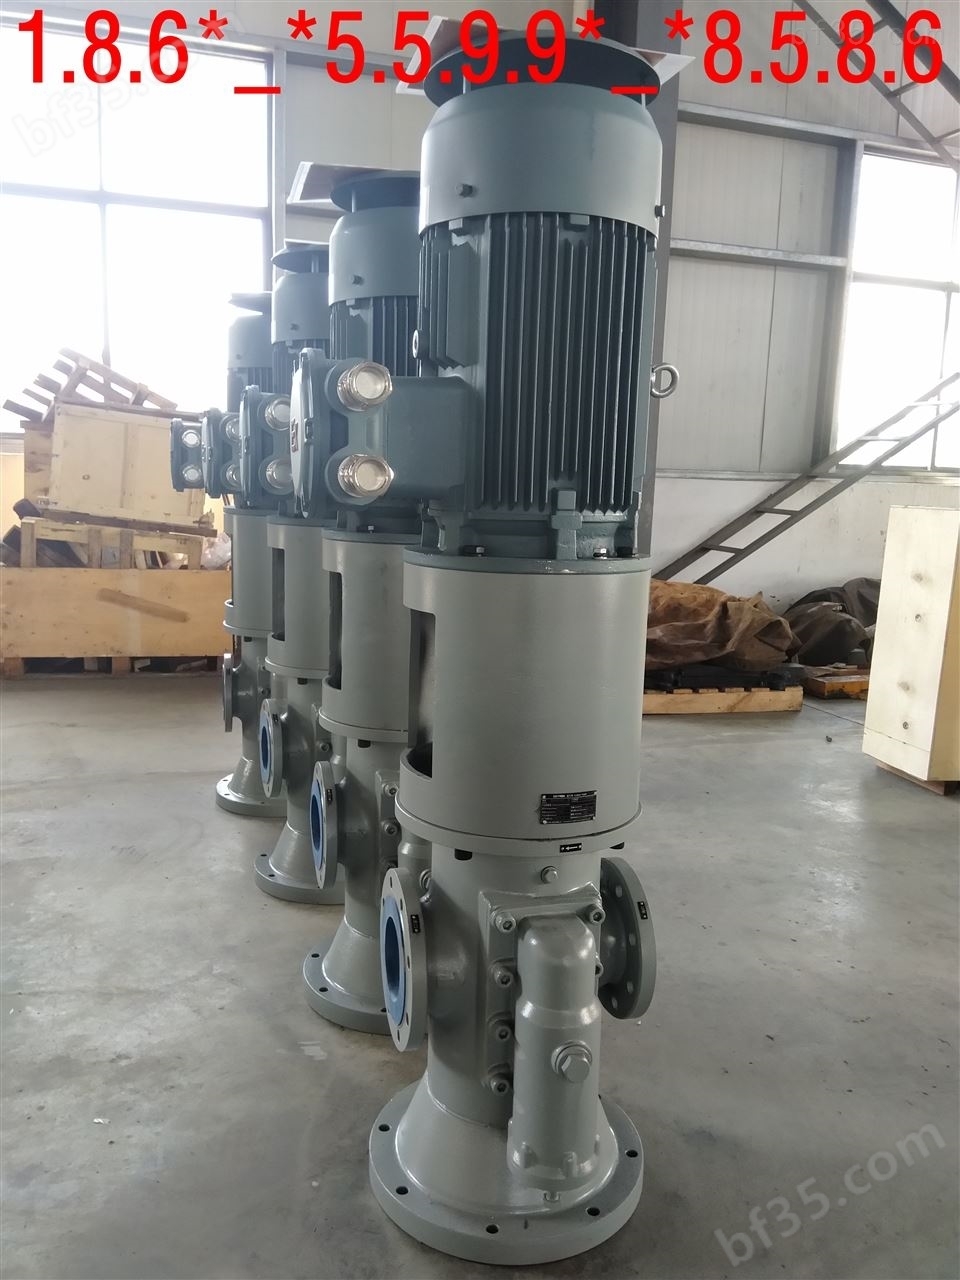 SNS280R43U21W23gnf螺杆泵